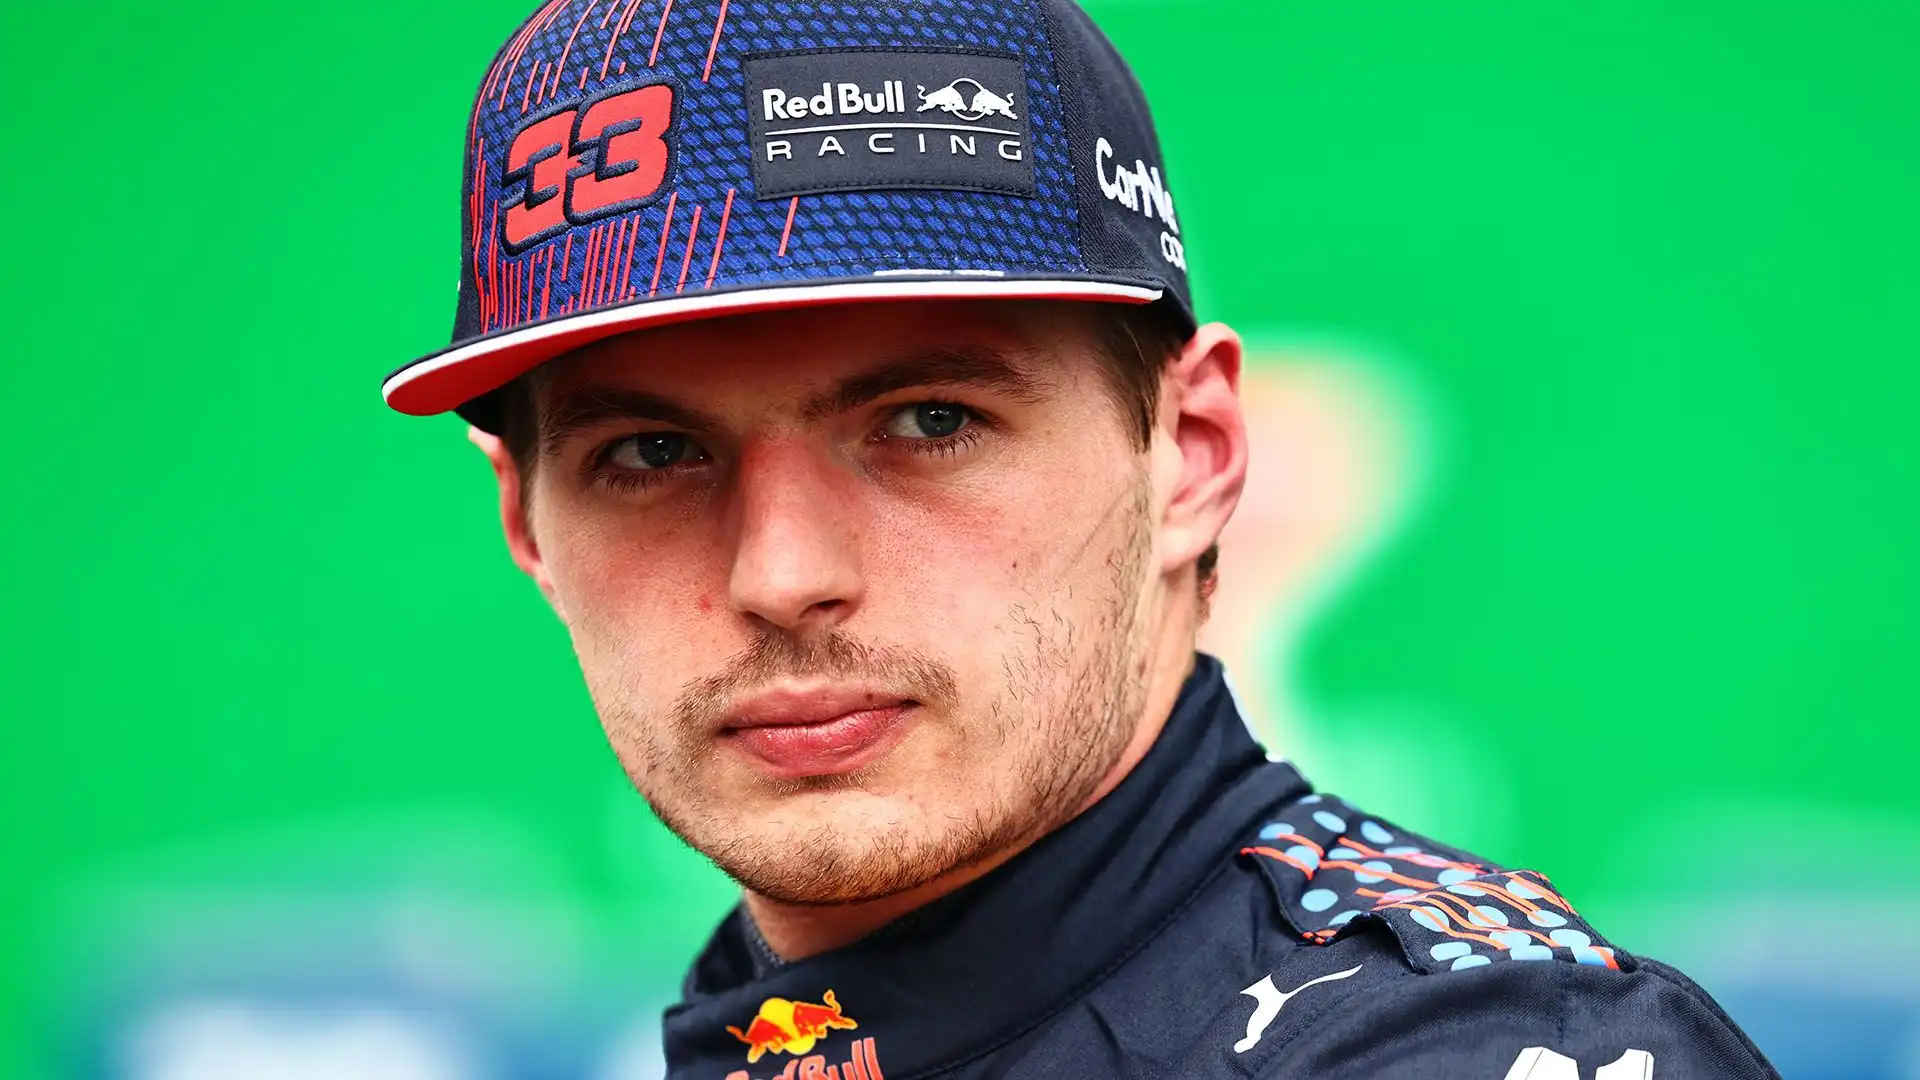 E' stato promosso alla Red Bull Racing a metà 2016